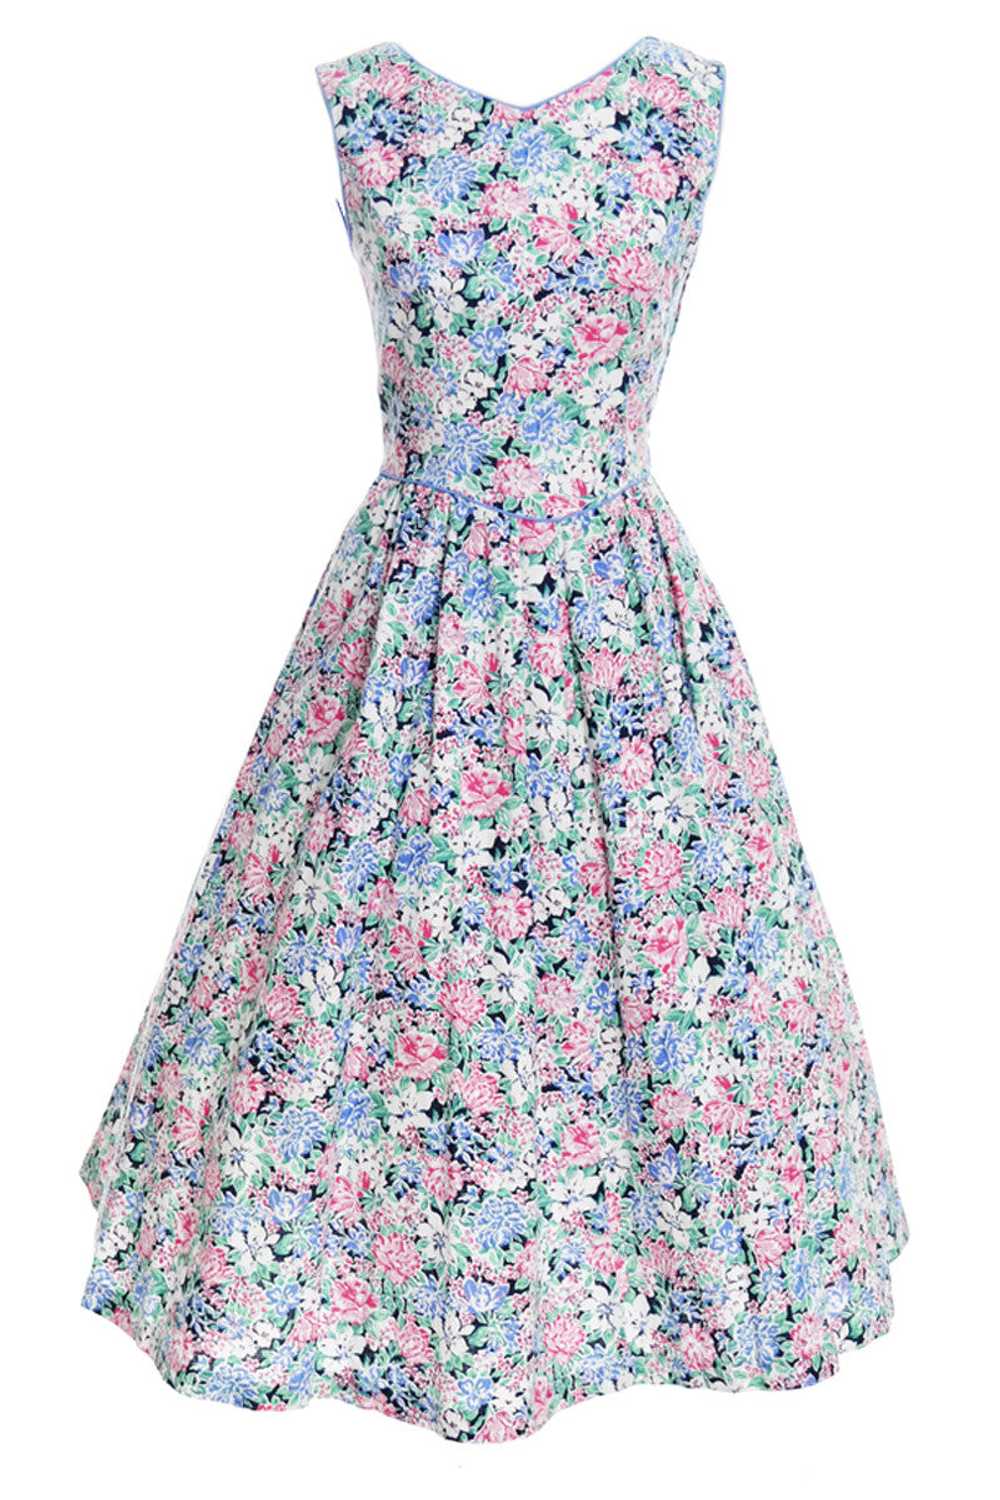 1970's Lanz Originals Floral Cotton Vintage Dress - image 1